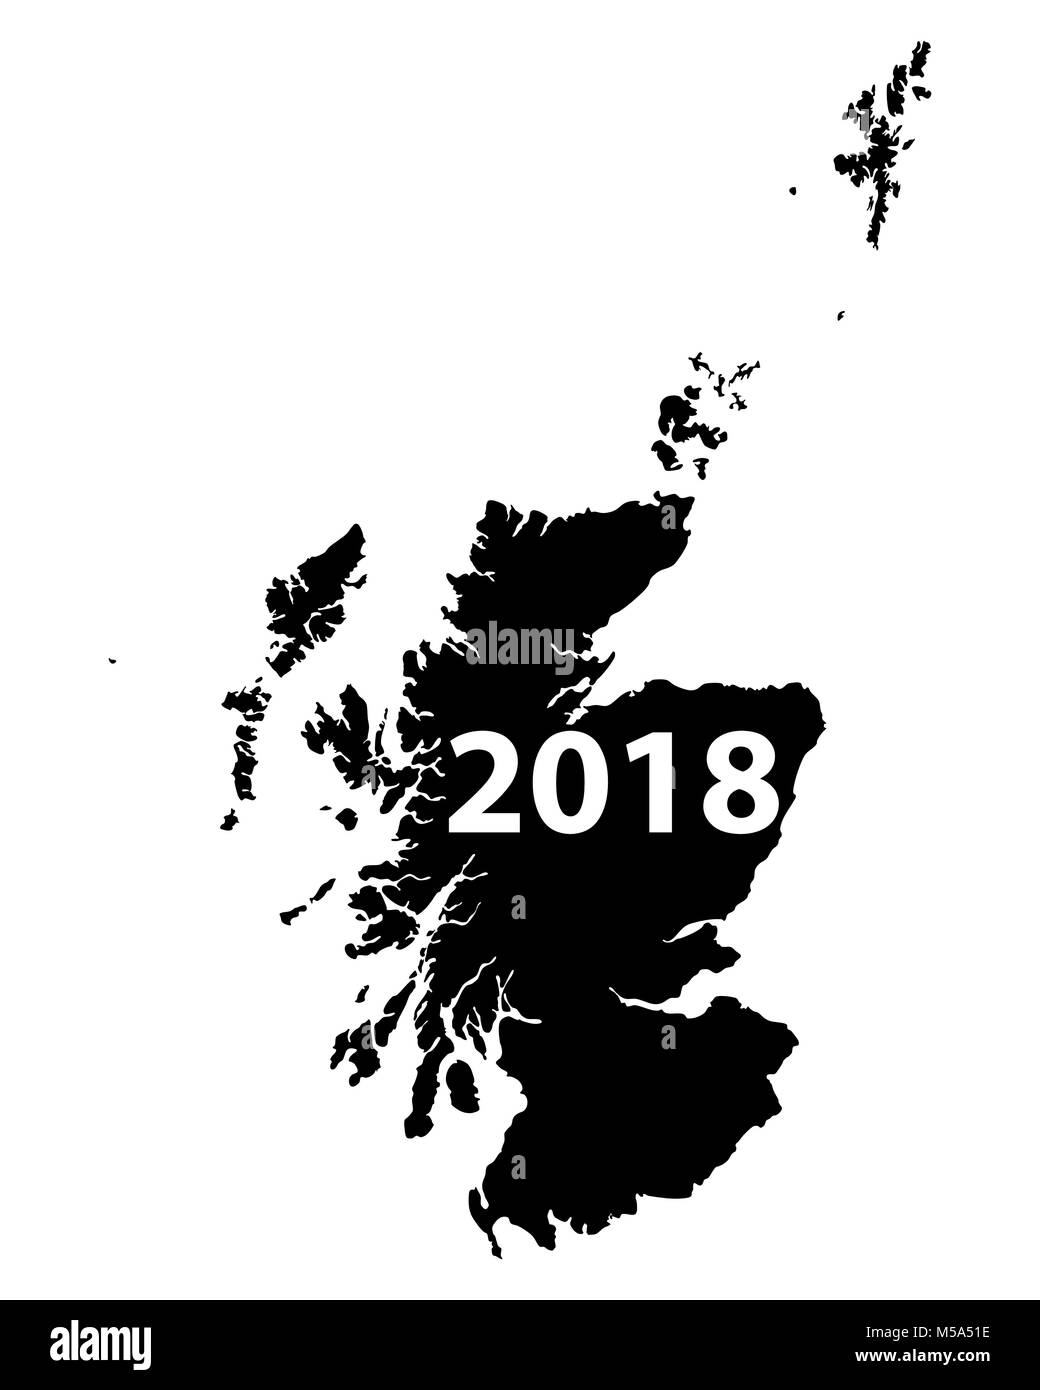 Map Of Scotland 2018 M5A51E 